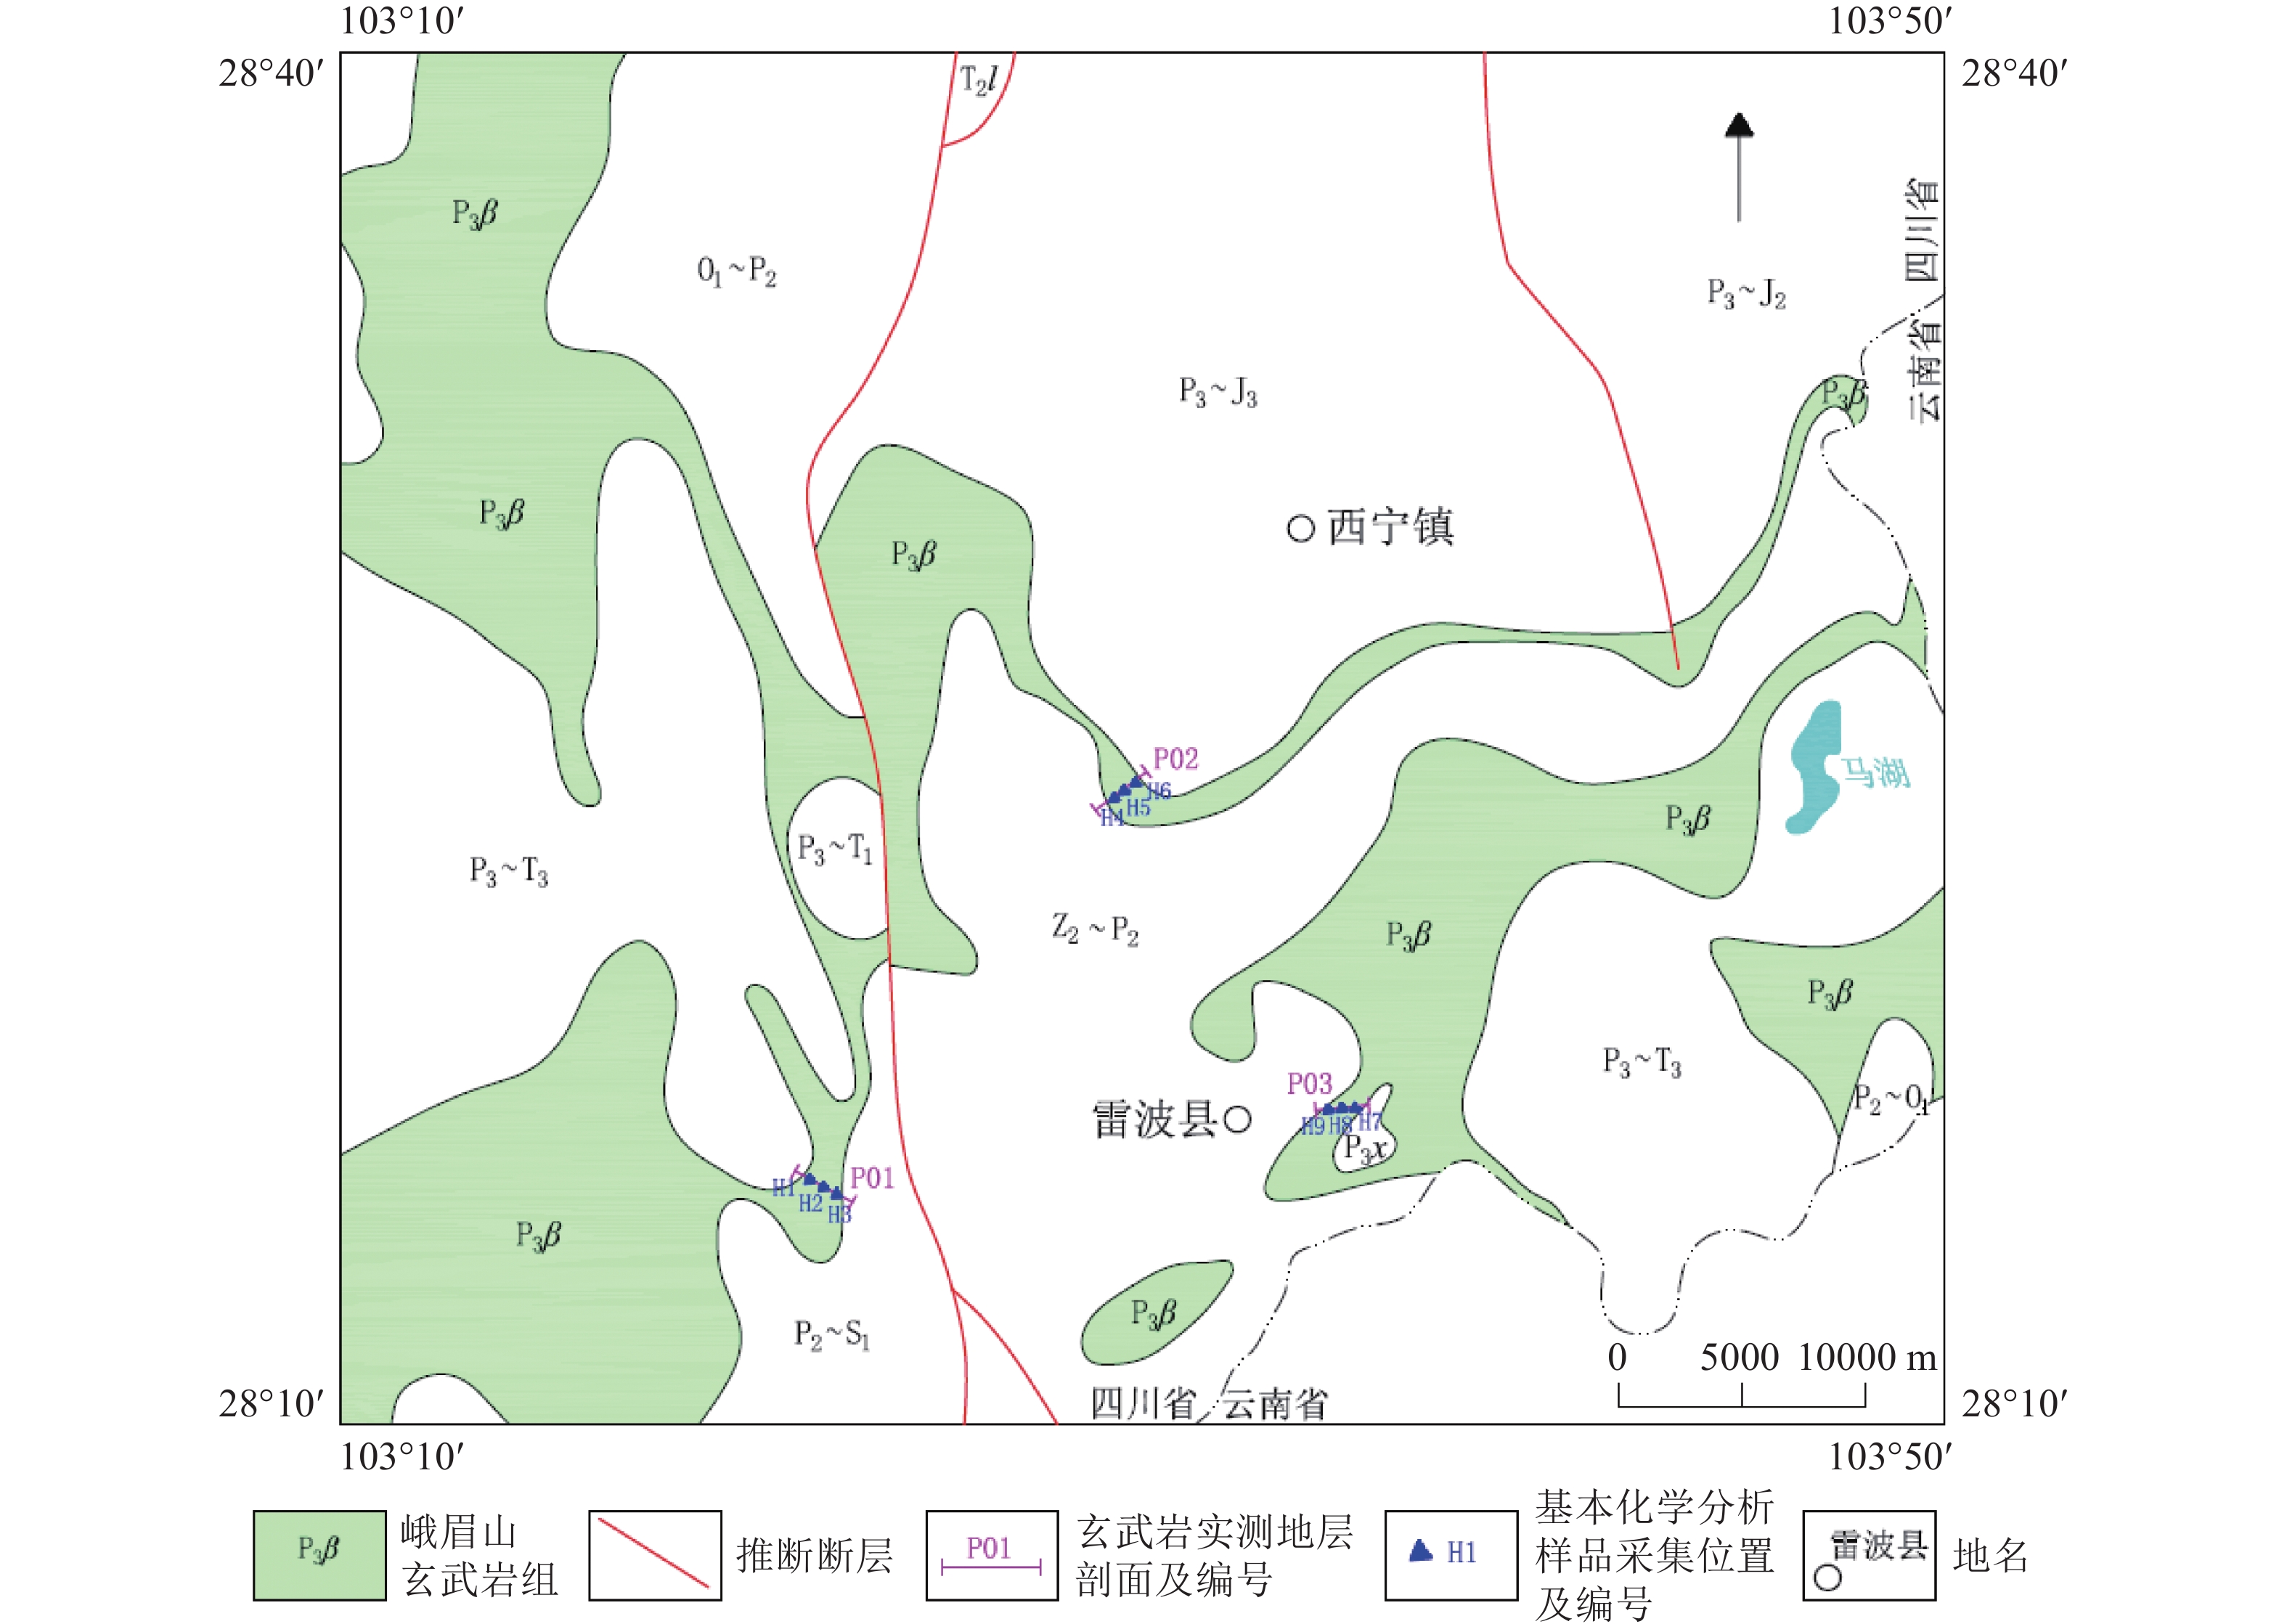 四川省雷波地区纤维用玄武岩找矿远景分析